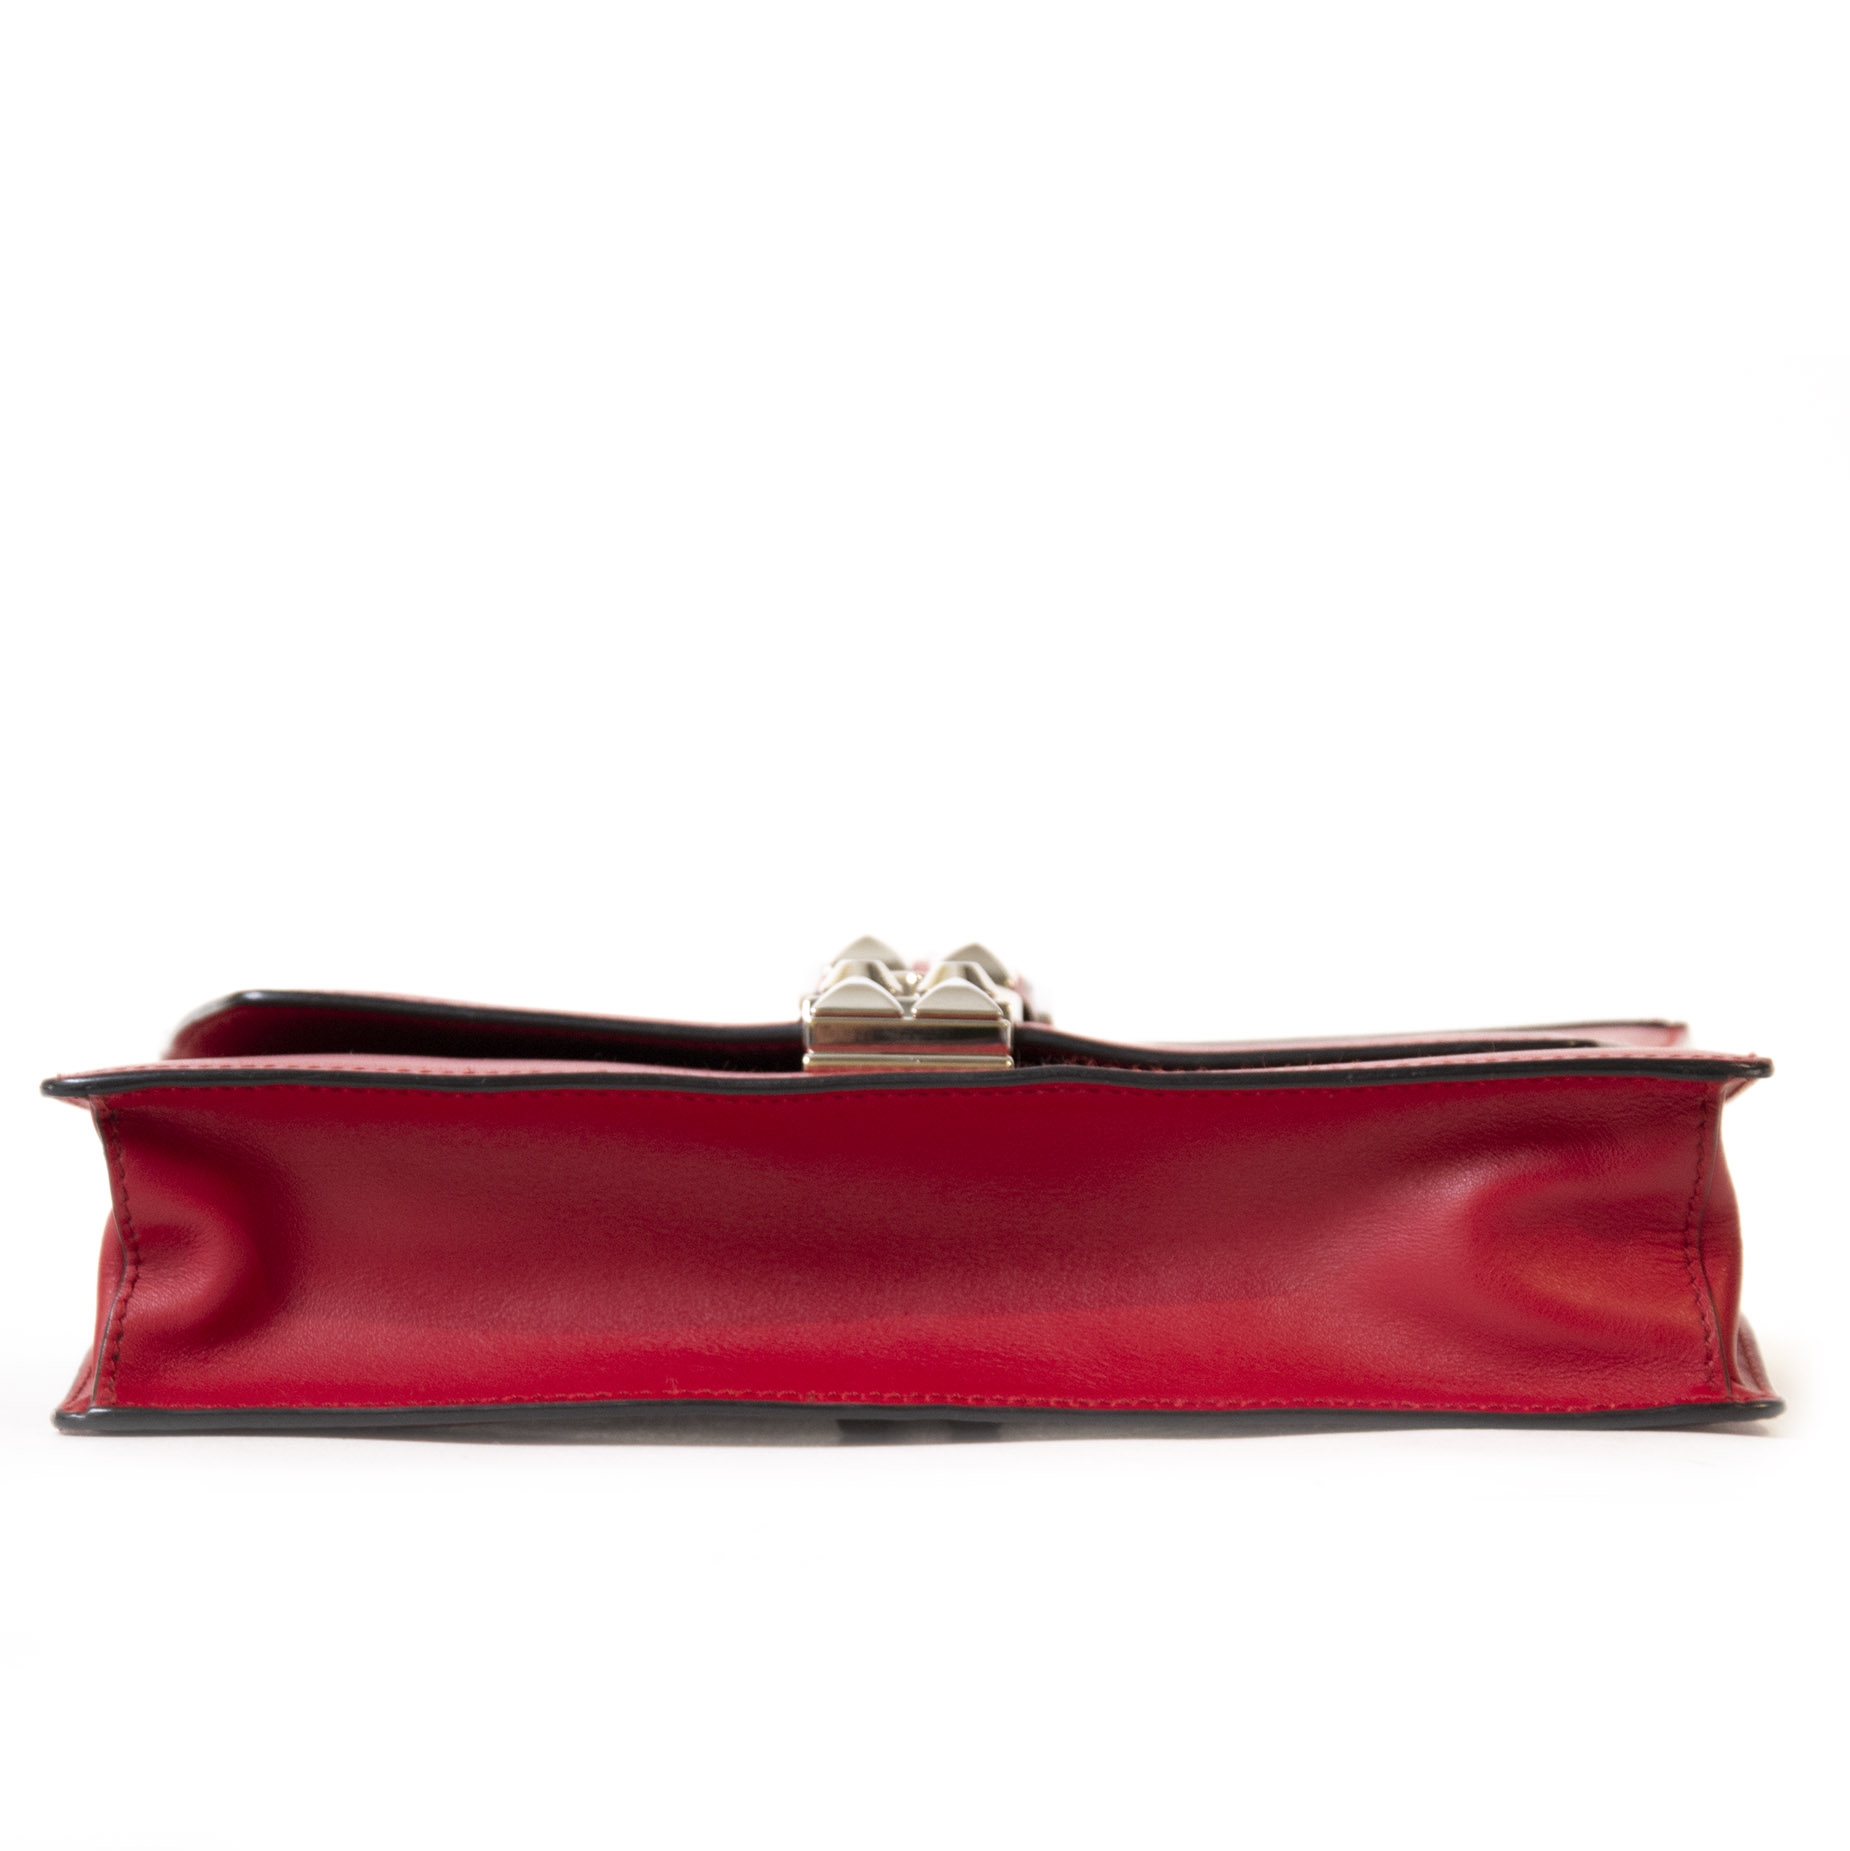 Prada Elektra Crossbody Shoulder Bag in Pink Saffiano Leather & Smooth –  Essex Fashion House